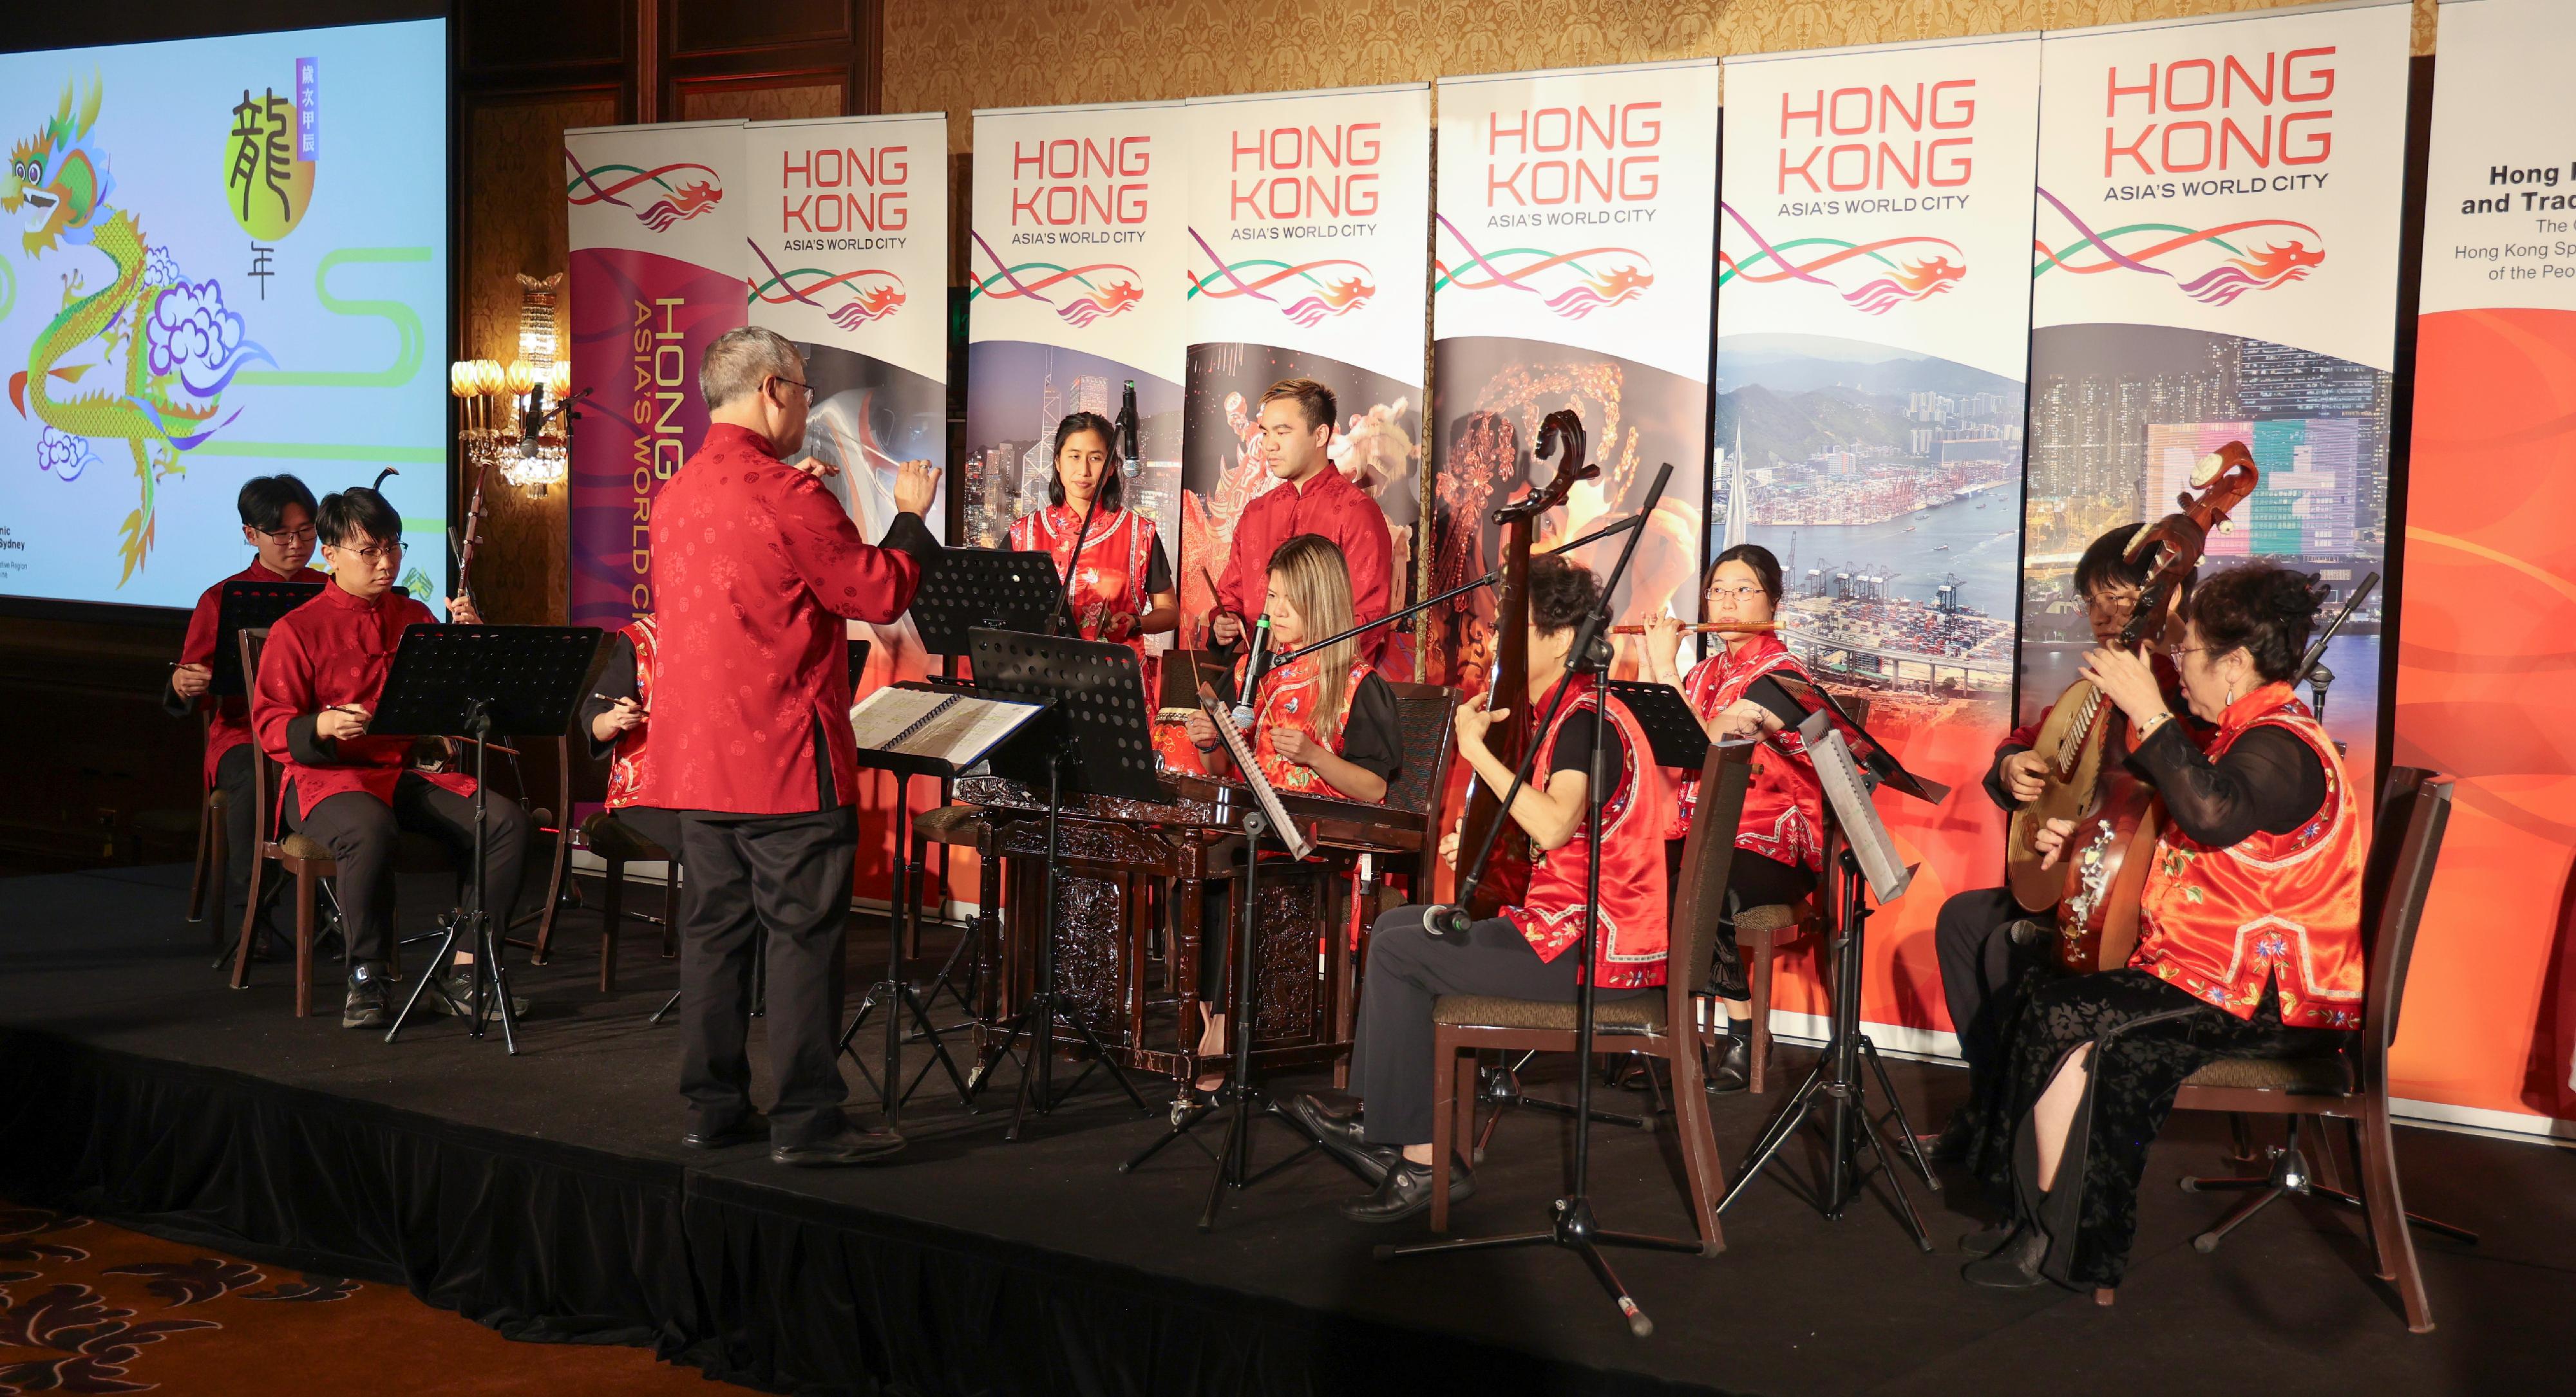 香港驻悉尼经济贸易办事处昨日（二月十五日）在澳洲墨尔本举行酒会，庆祝农历新年。酒会上安排了中乐表演，以推广中国传统音乐。